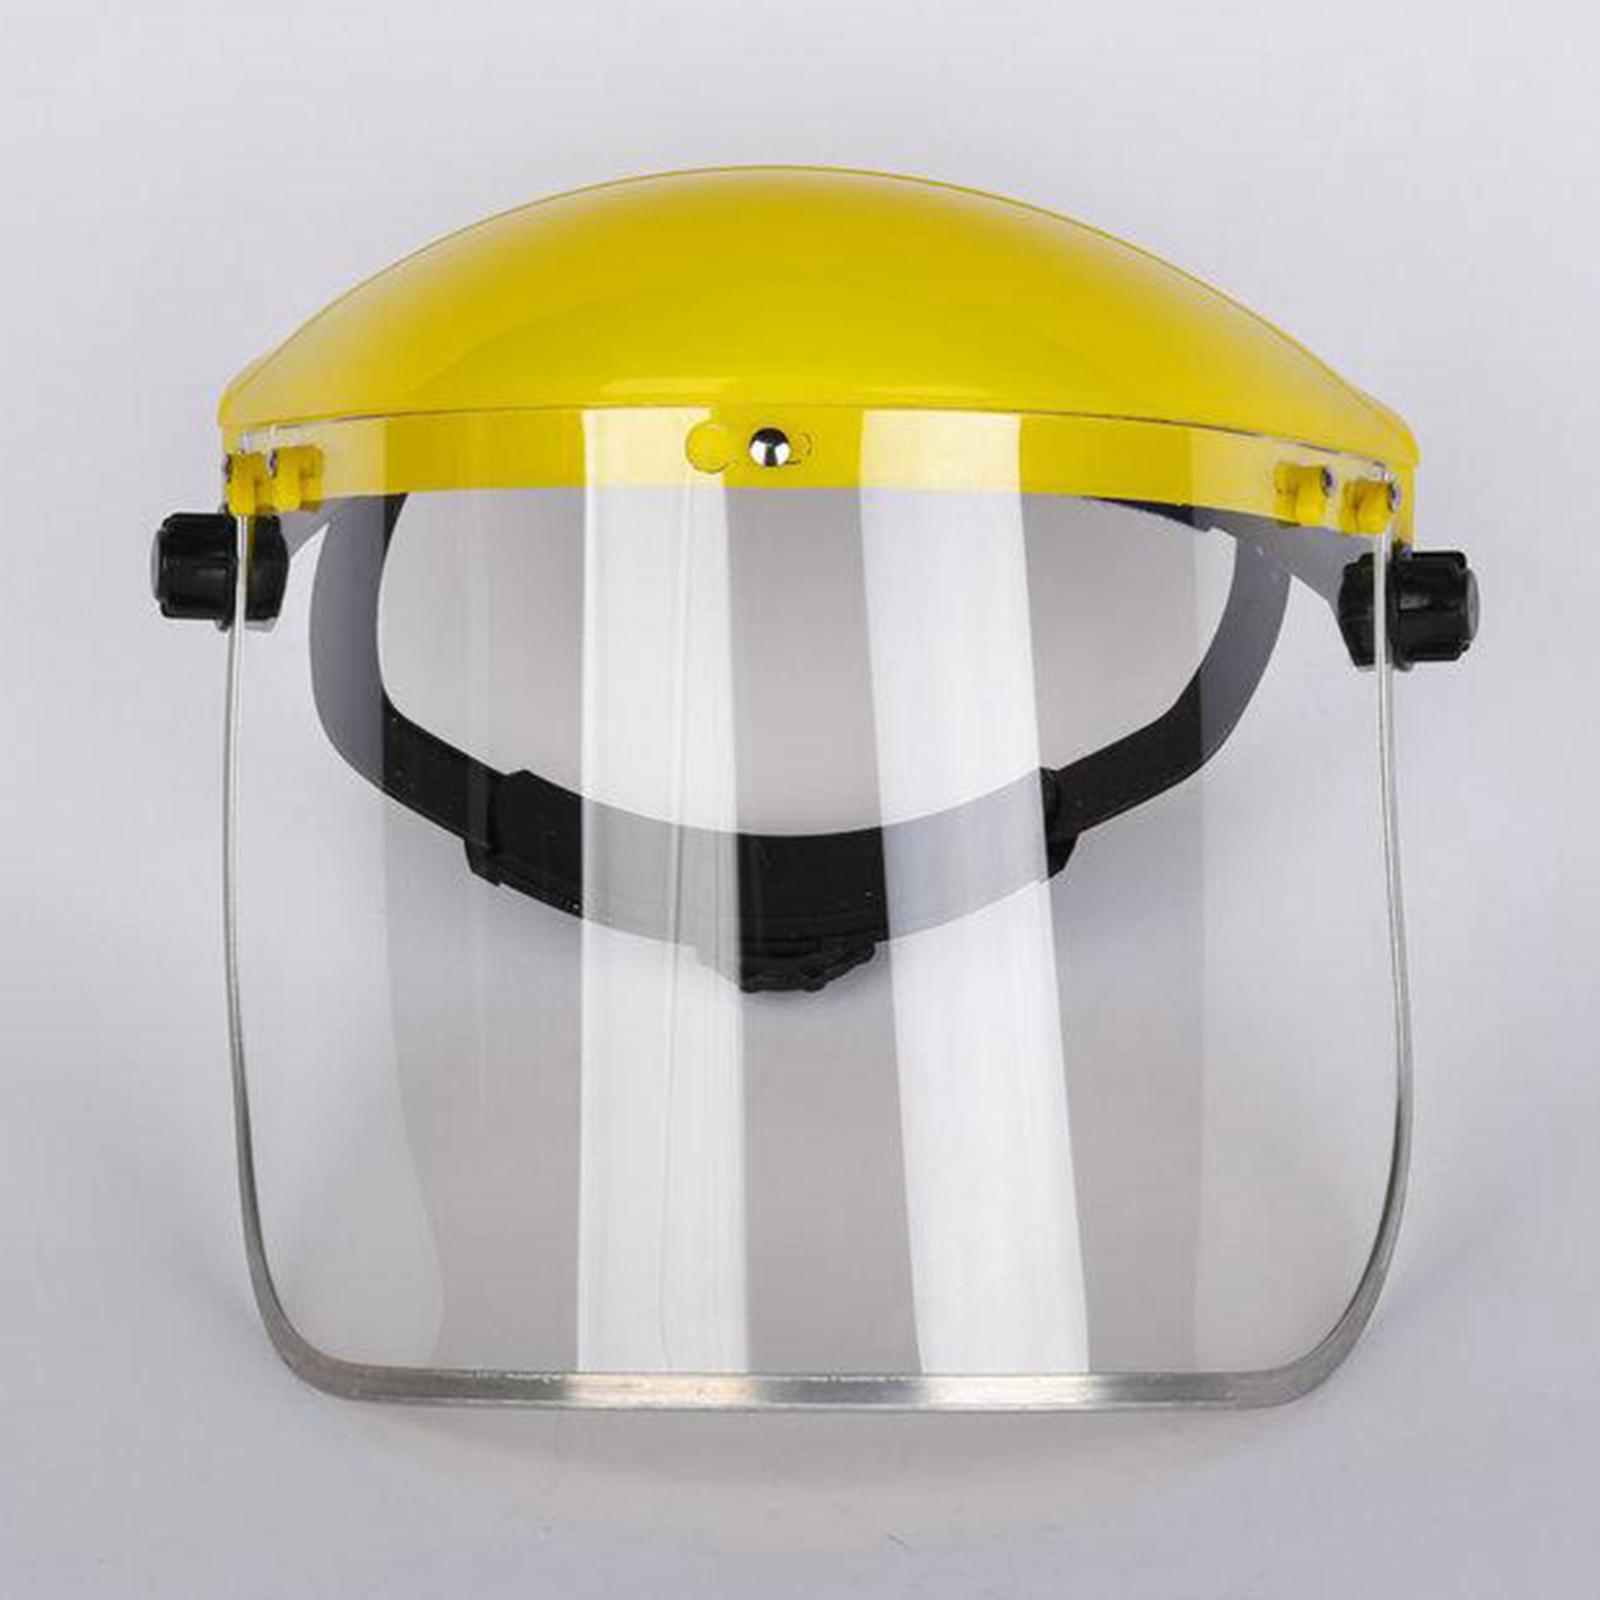 Anti Fog Full Face Shield Head-mounted Safety Anti-splash Clear Glasses Visor Safety Work Welding Grinding Helmet Cover